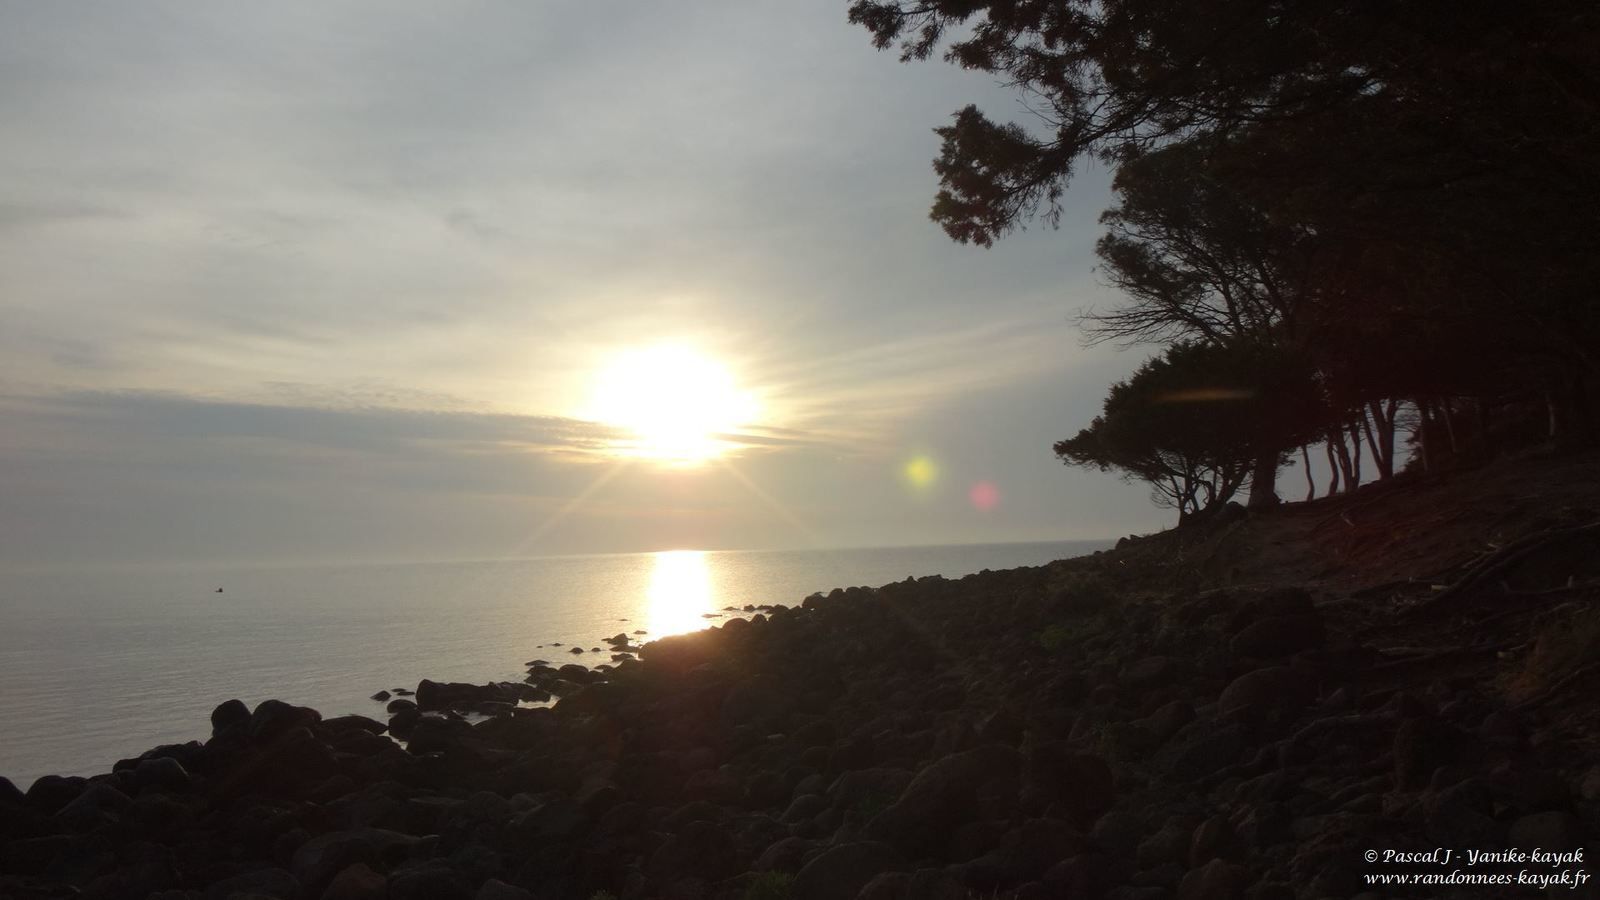 Sardegna 2019, una nuova avventura - Chapitre 5 : à la découverte des merveilles du Golfe d'Orosei (5) 